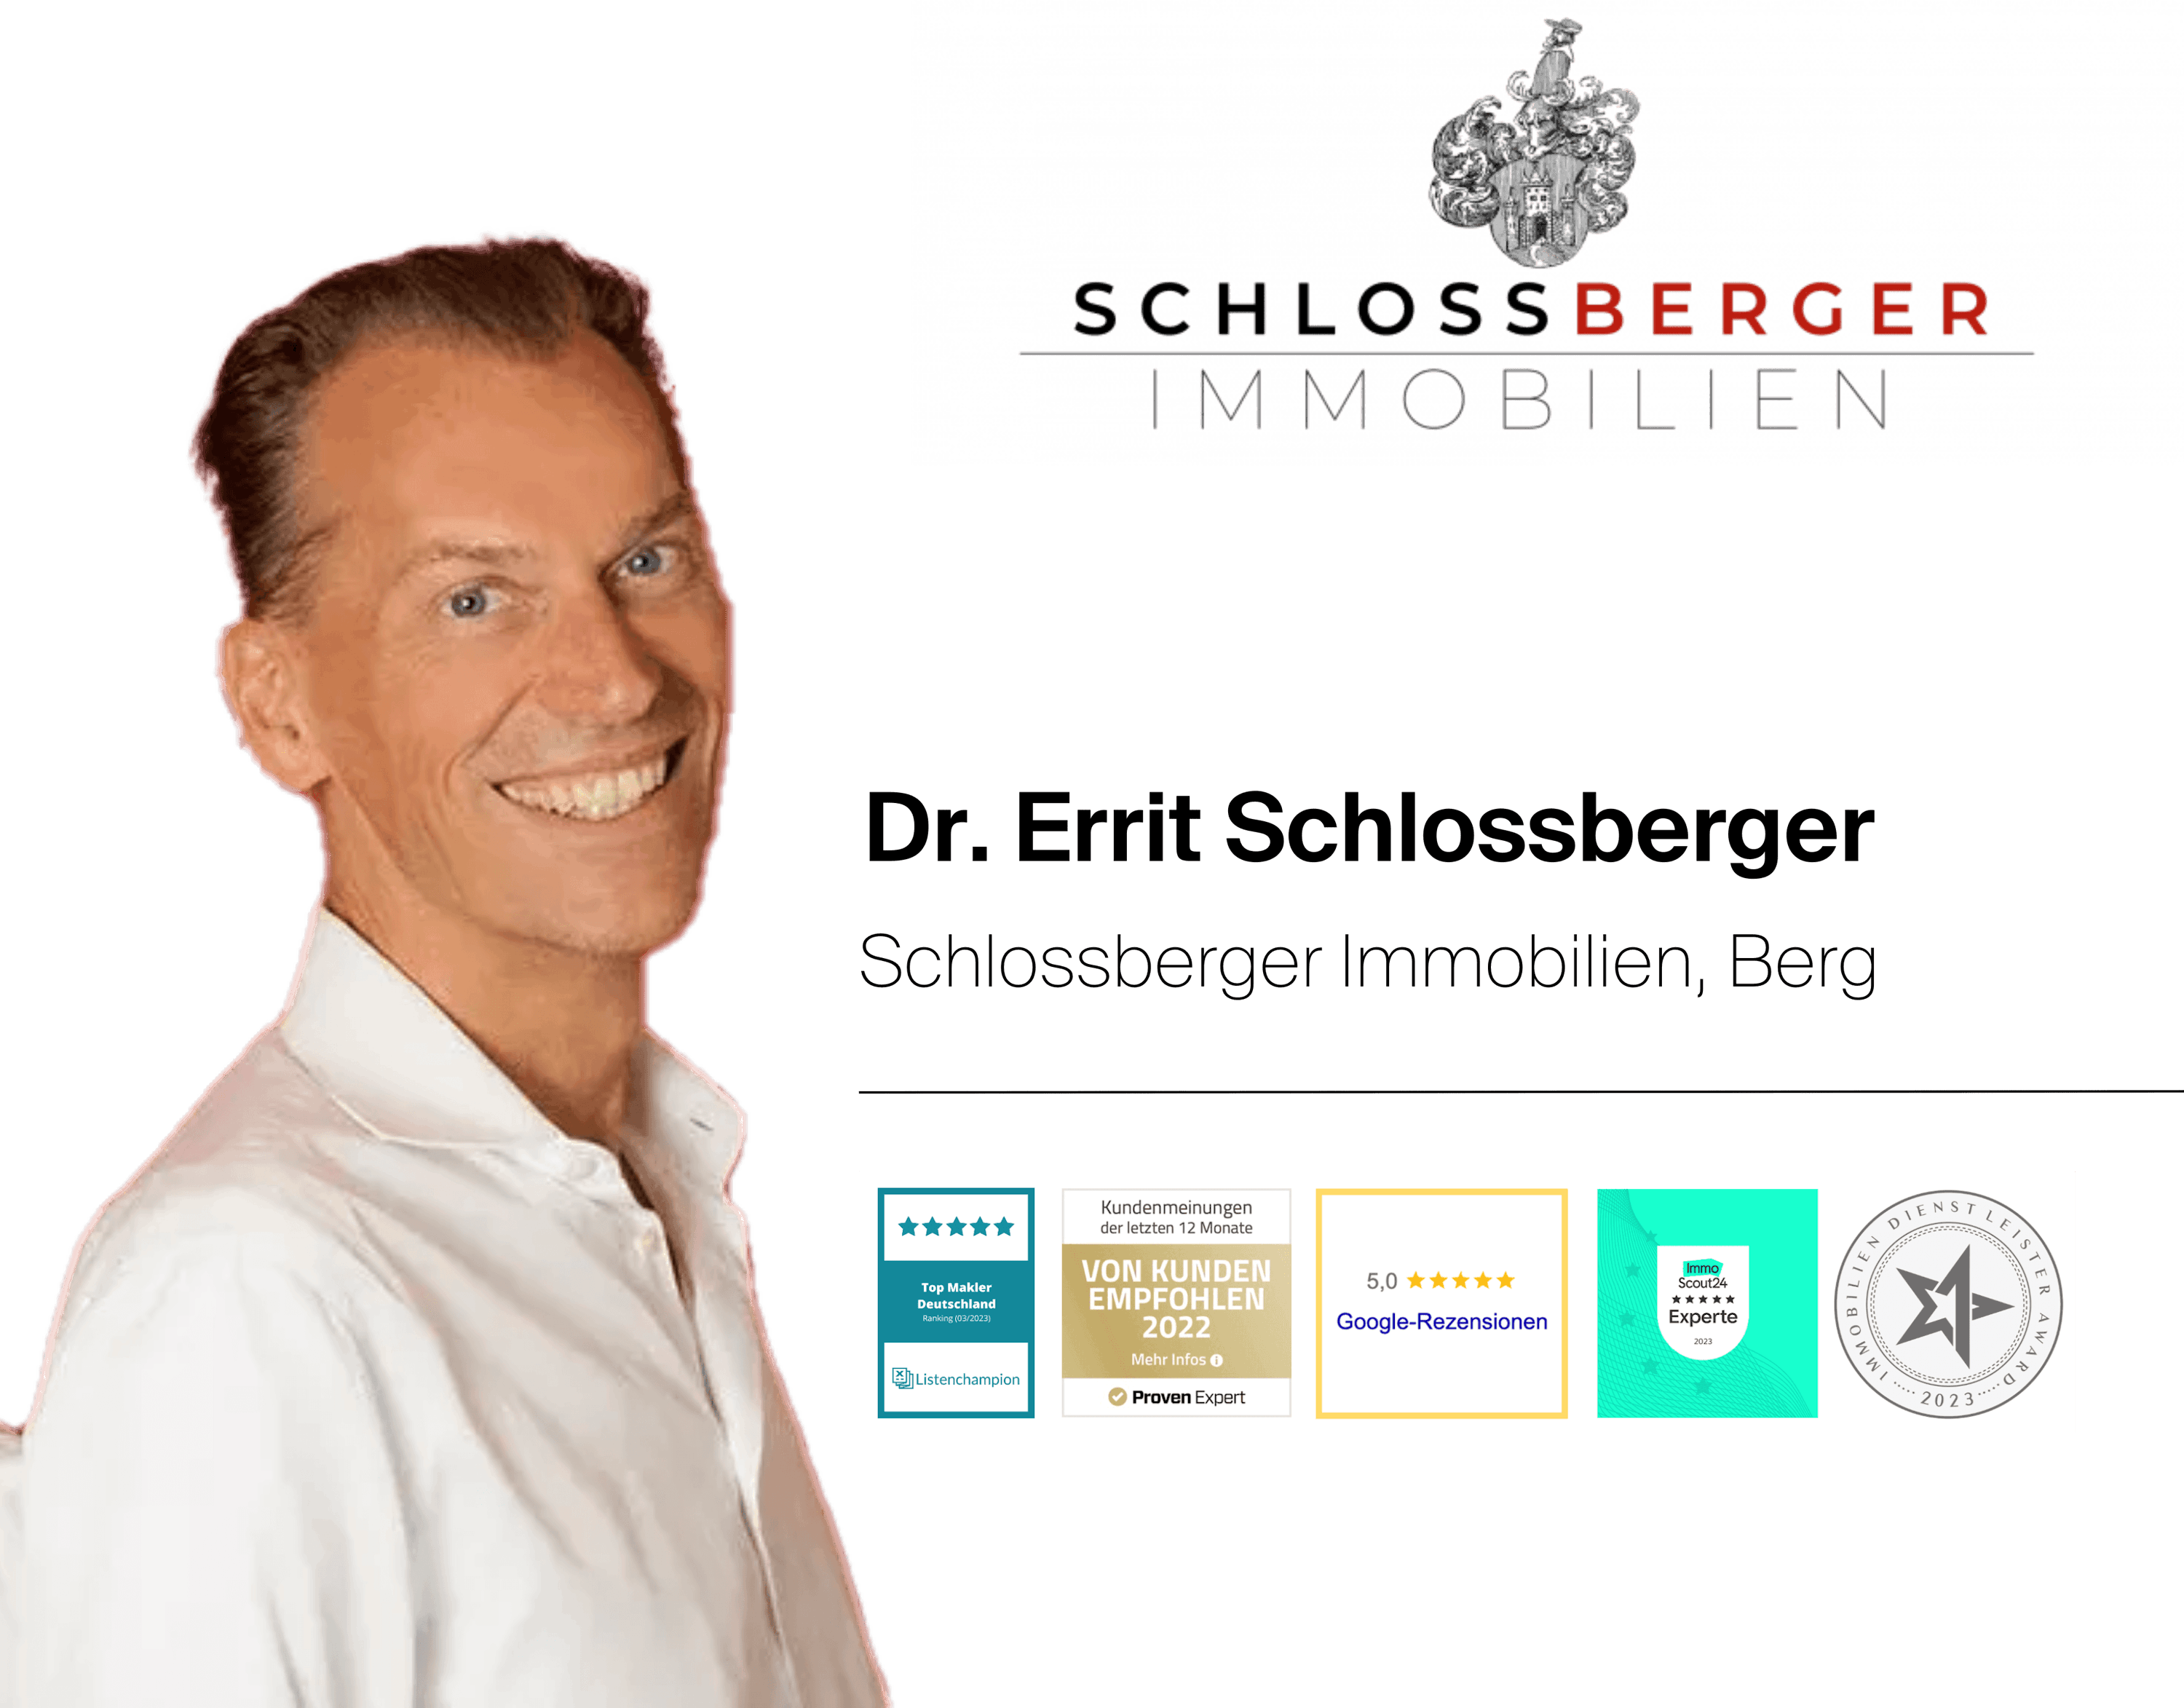 Dr. Errit Schlossberger Schlossberger Immobilien, Berg